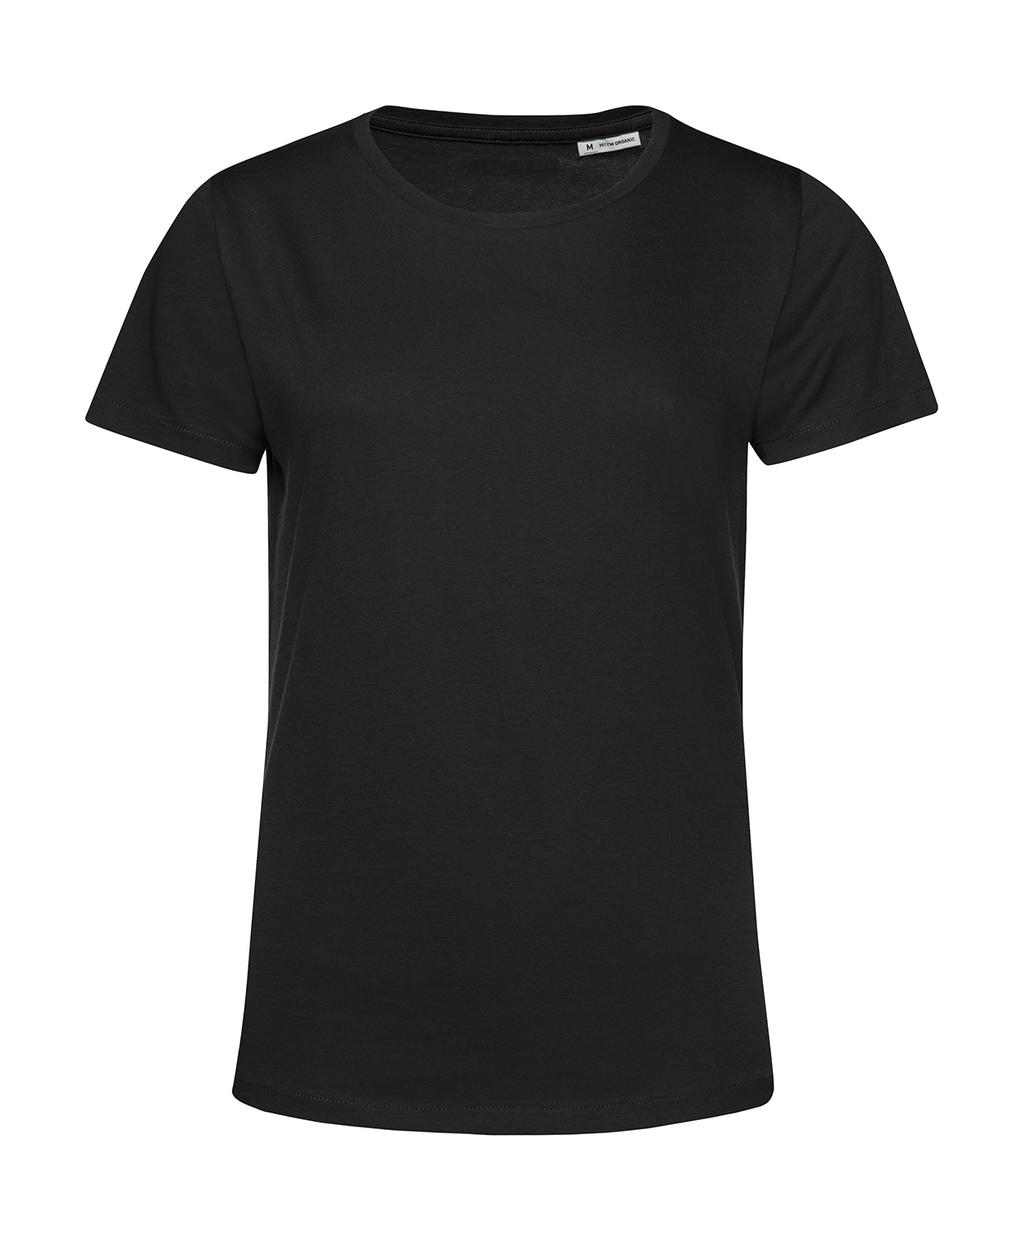 Tričko dámské BC Organic Inspire E150 - černé, L